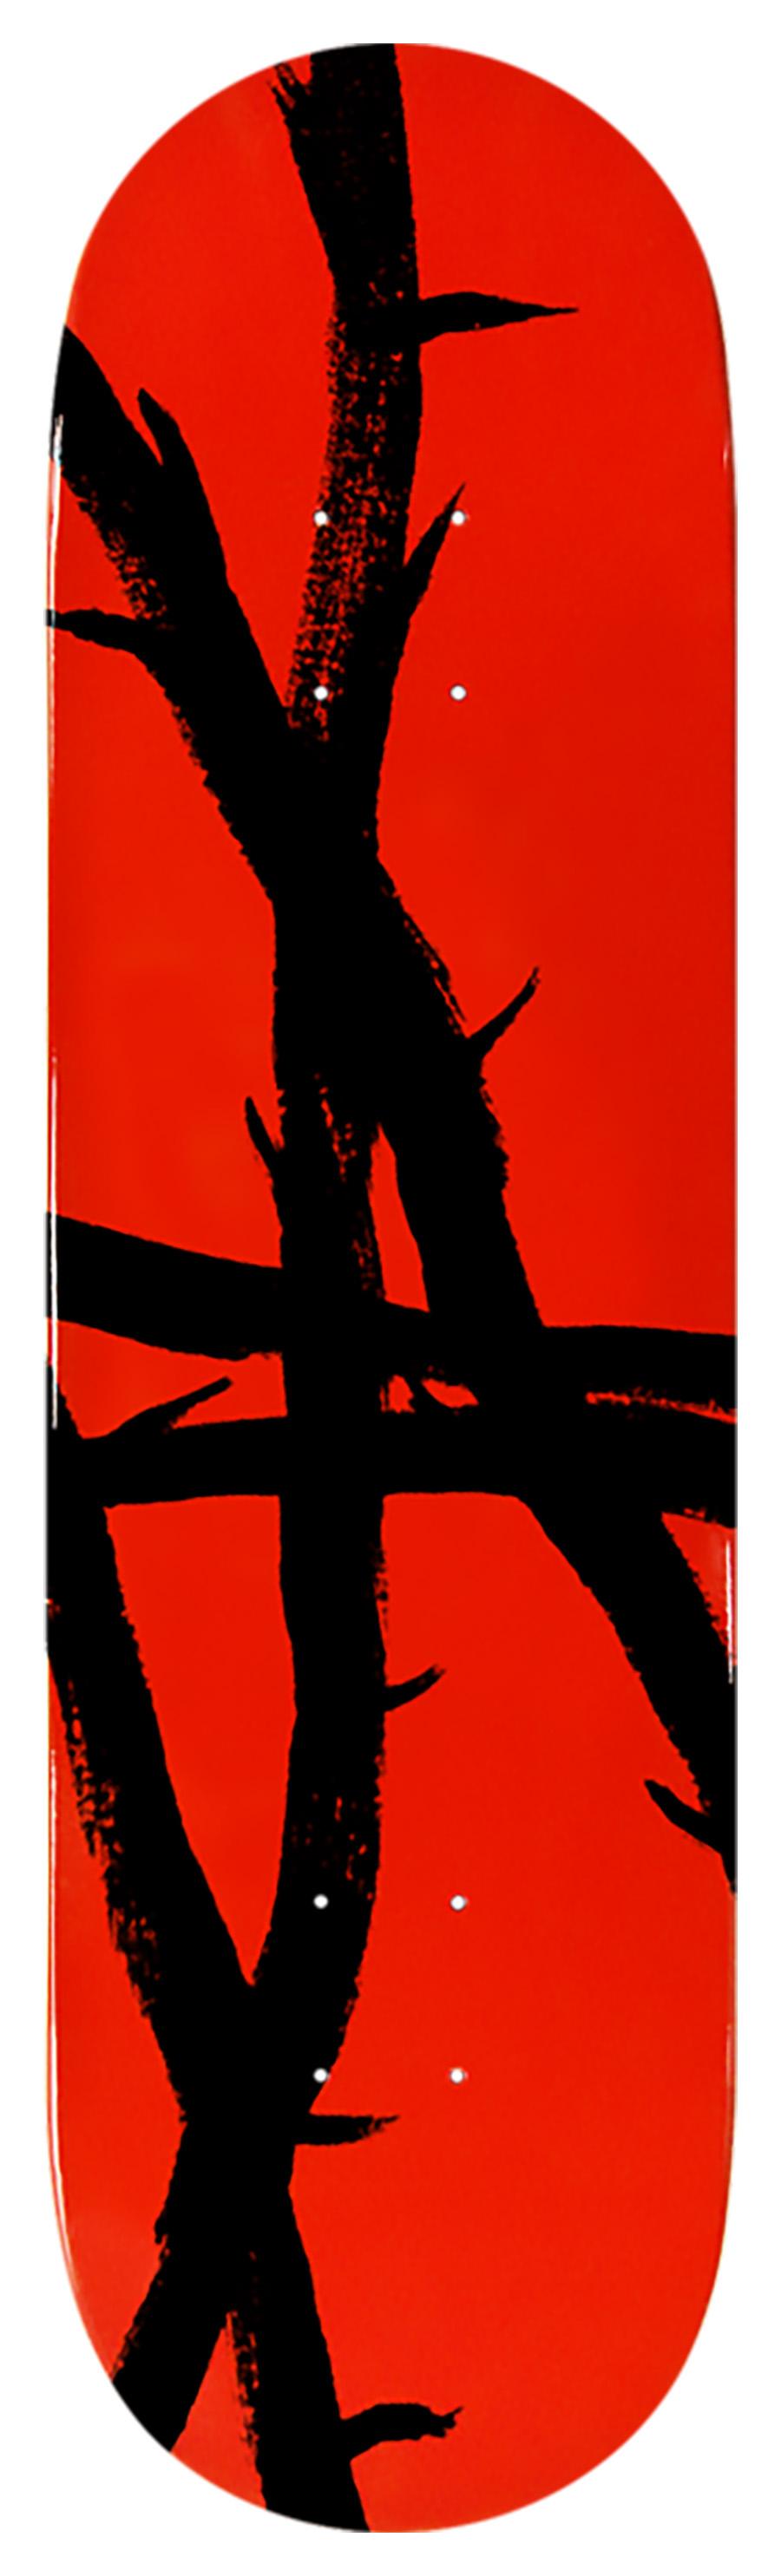 Lucien Smith Skateboard Deck:
Ein lebhaftes Stück Wandkunst von Lucien Smith mit dem Motiv "Beast of Burden, 2020", limitierte Serie in Zusammenarbeit mit dem Sneeze Magazine. Dieses Deck ist neu in seiner Originalverpackung. Ein brillantes Stück,